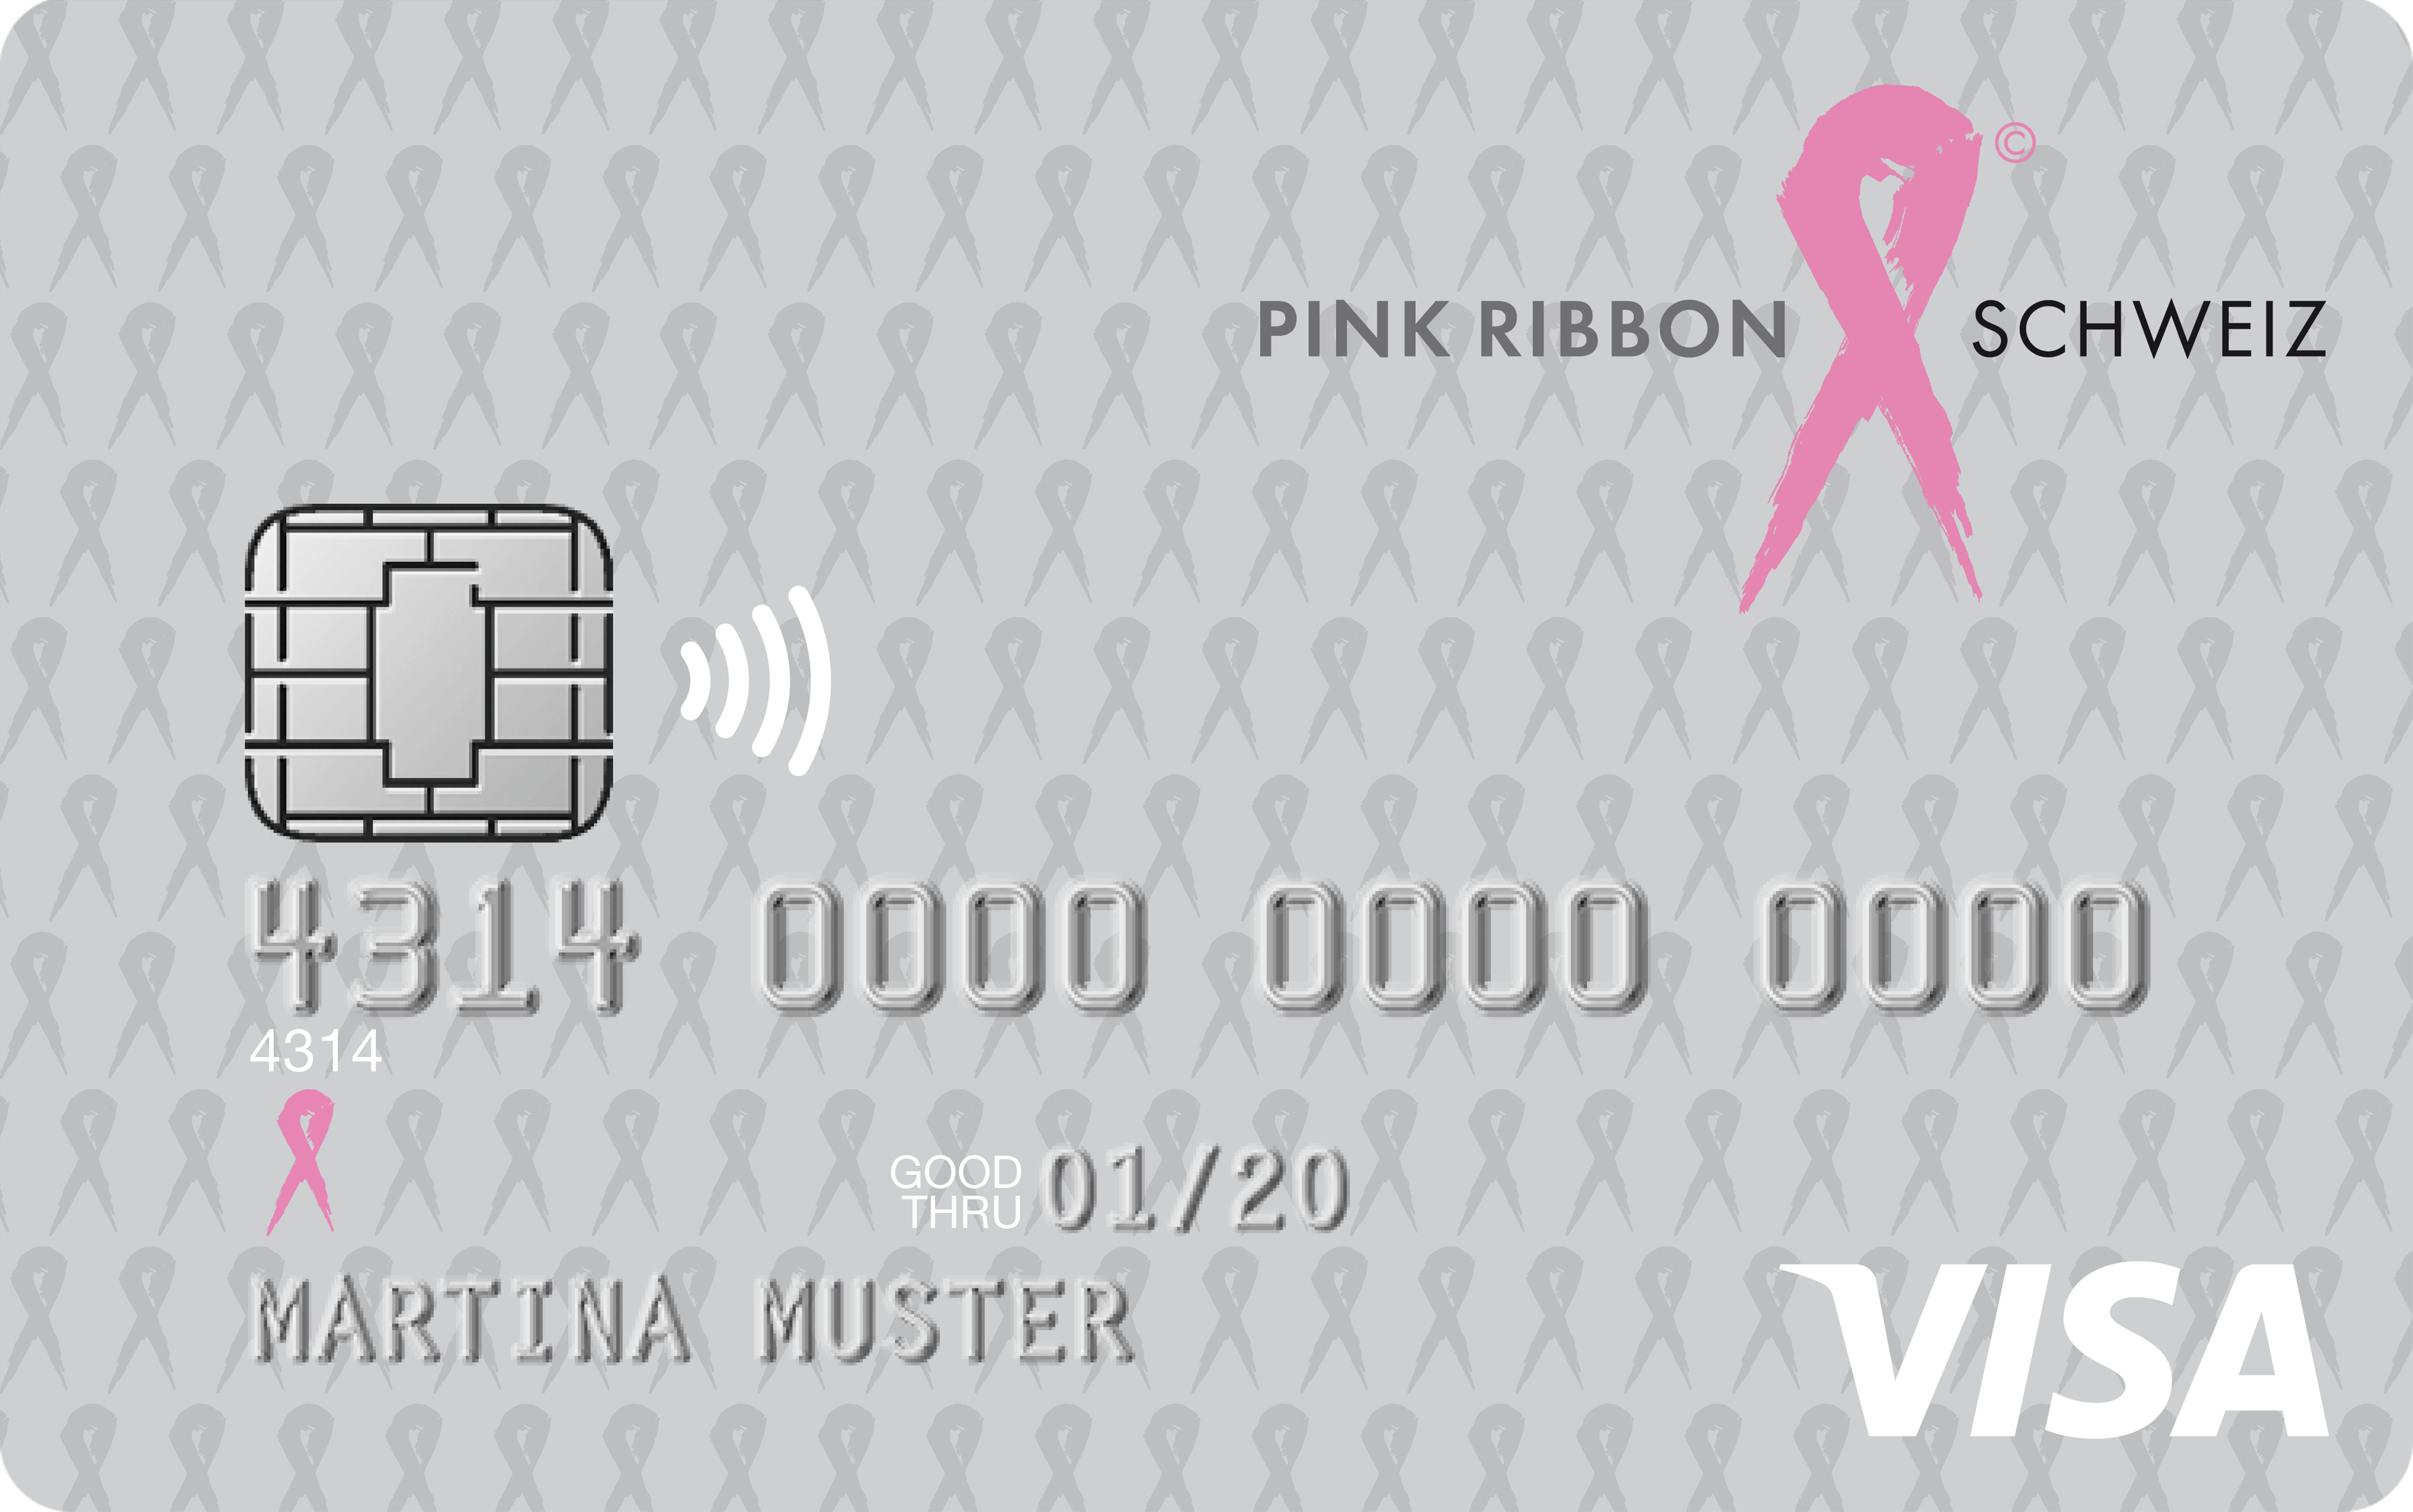 PINK RIBBON Visa Bonus Card